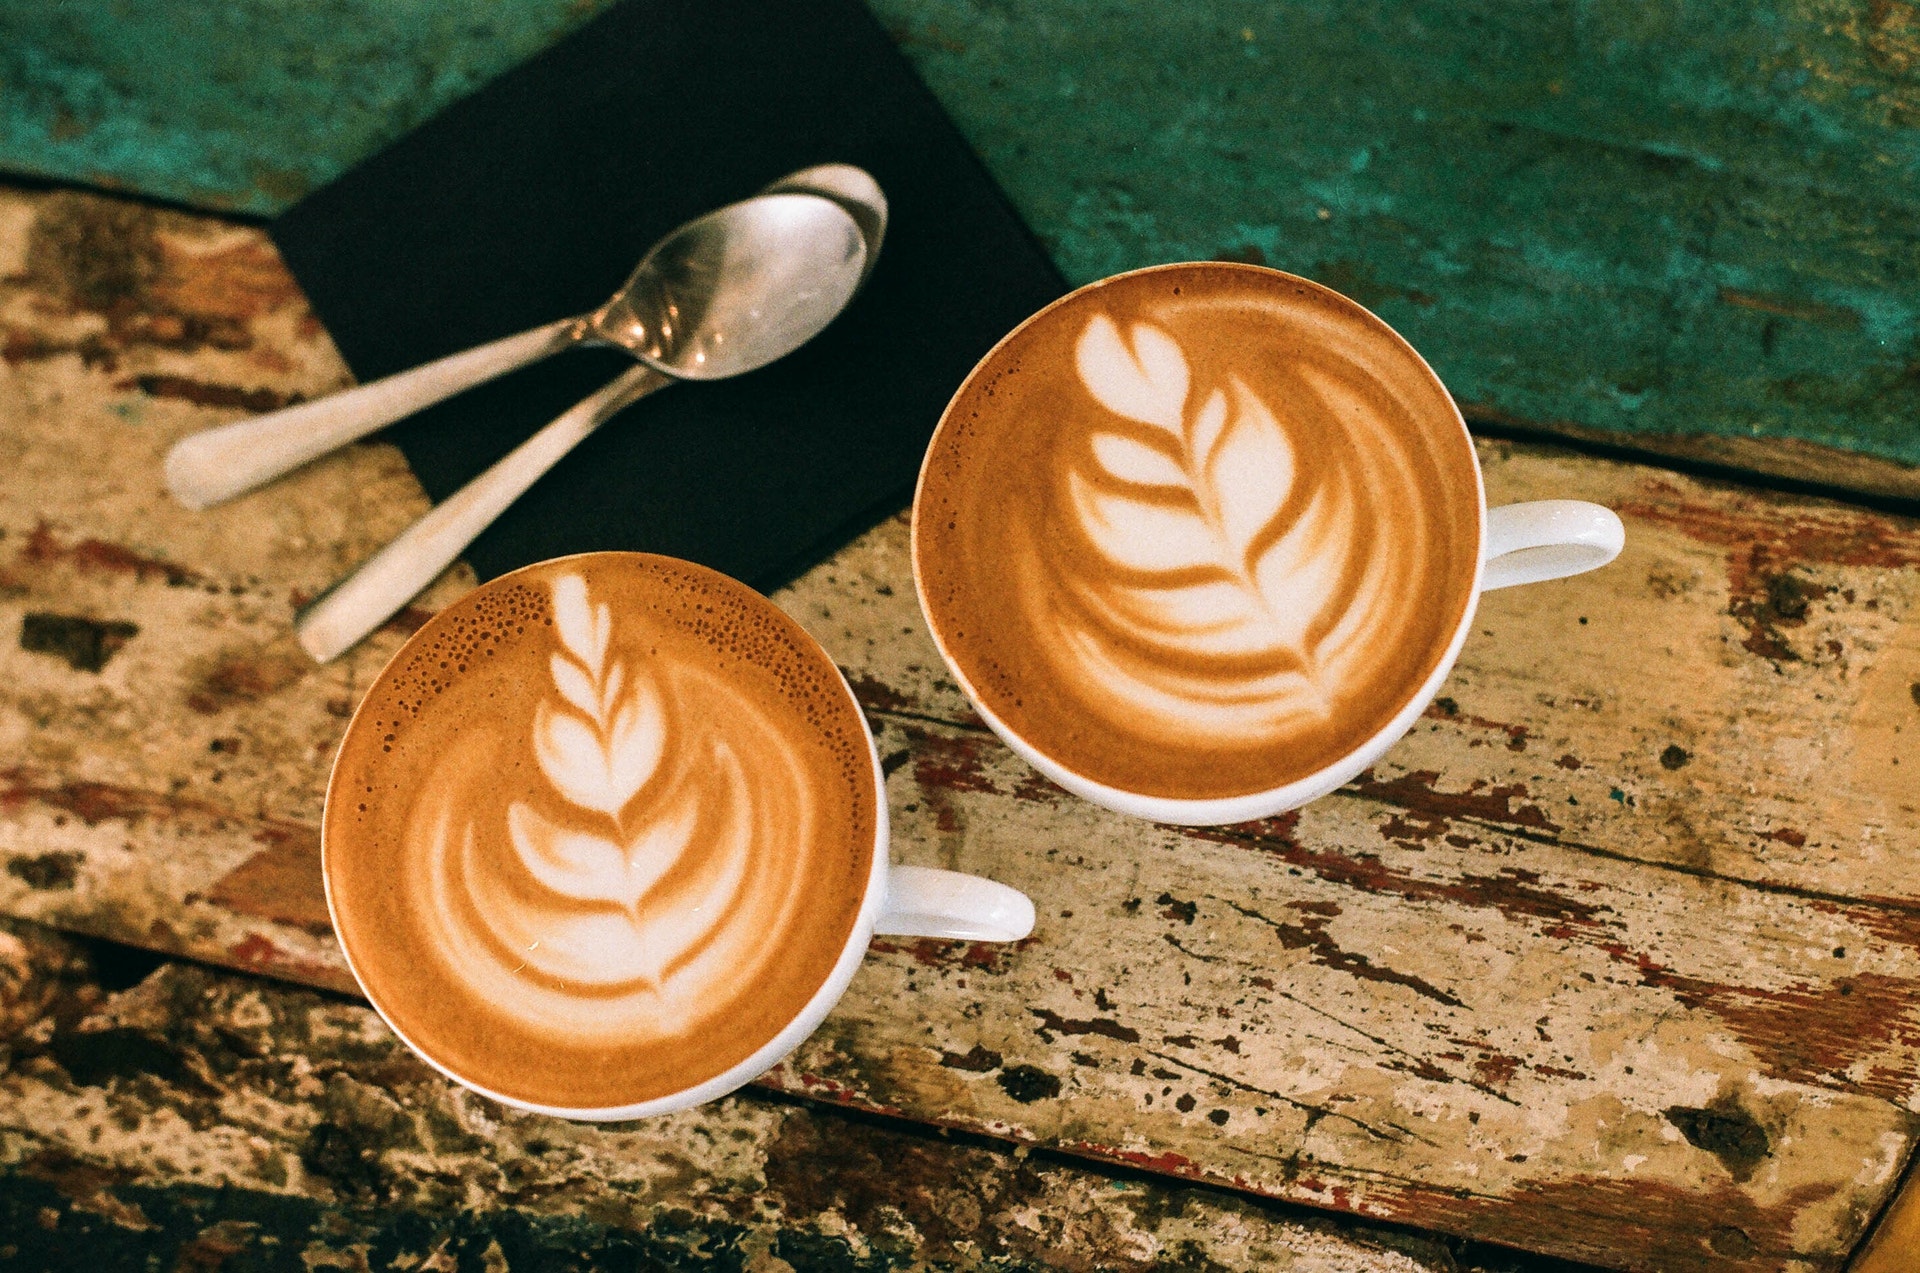 Cafe tâm trạng là đồ uống lý tưởng để gửi gắm tâm sự và chia sẻ cảm xúc. Hãy thư giãn và tận hưởng vị đắng ngọt của cà phê qua các hình ảnh về cafe tâm trạng.